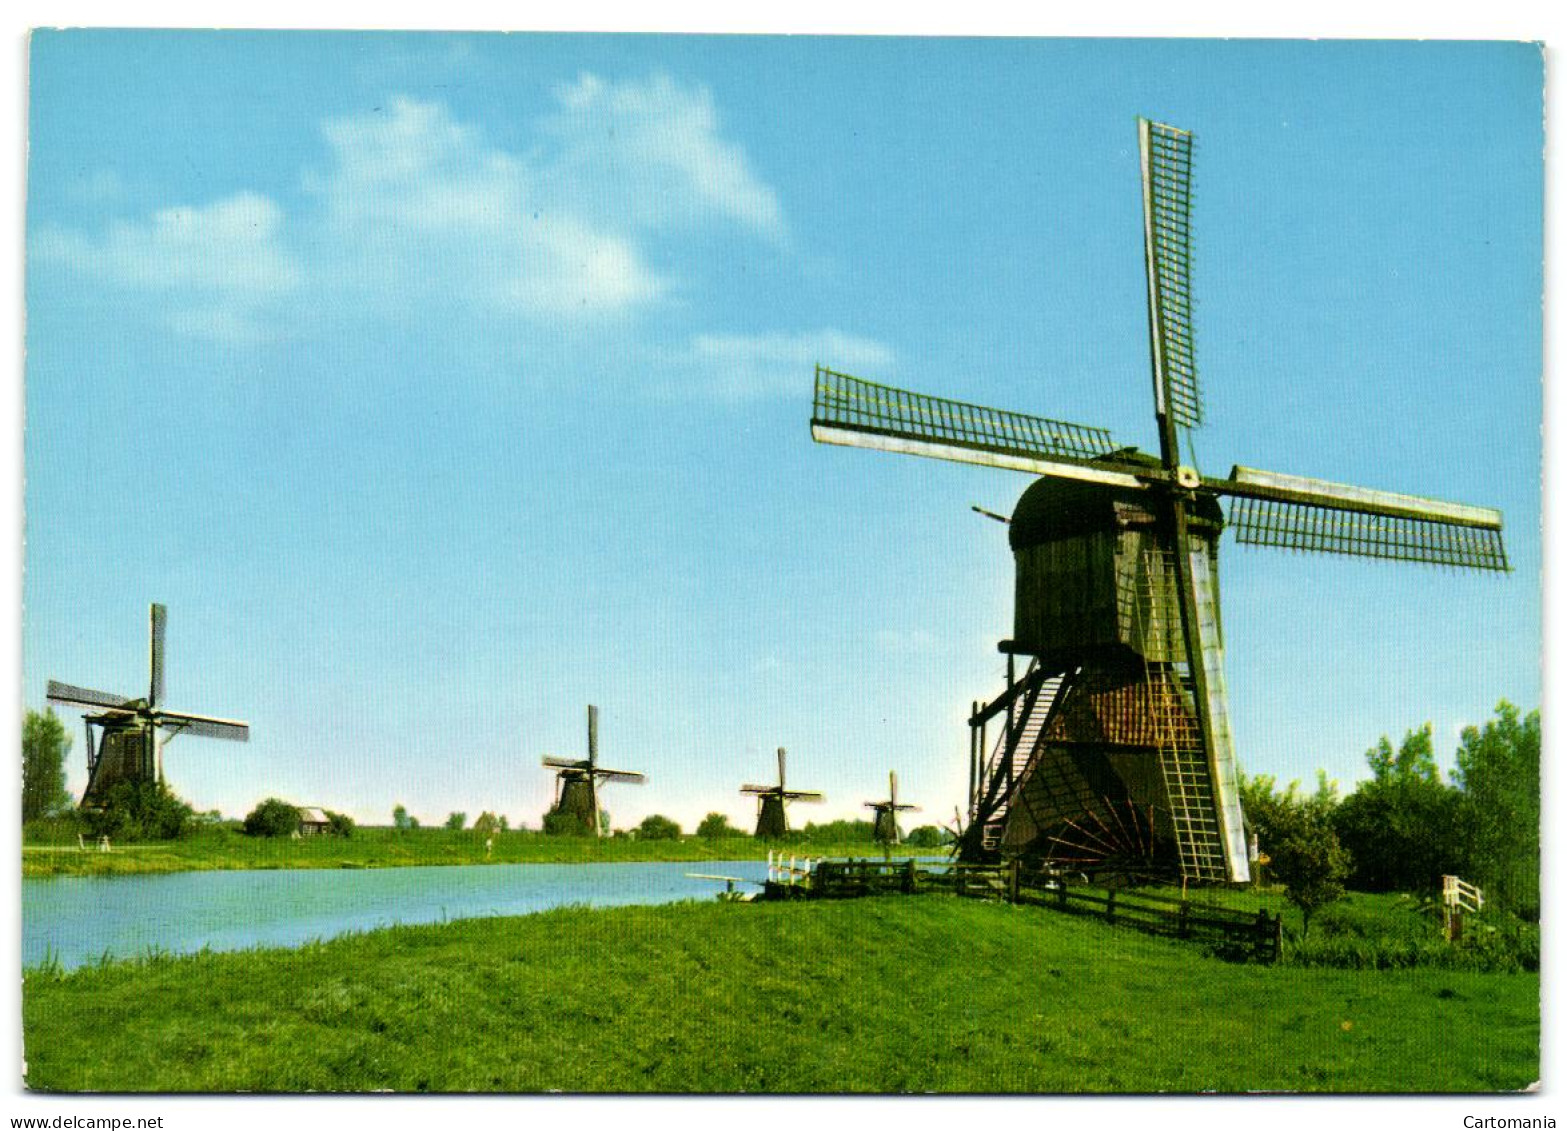 Hollandse Molen - Kinderdijk - Kinderdijk